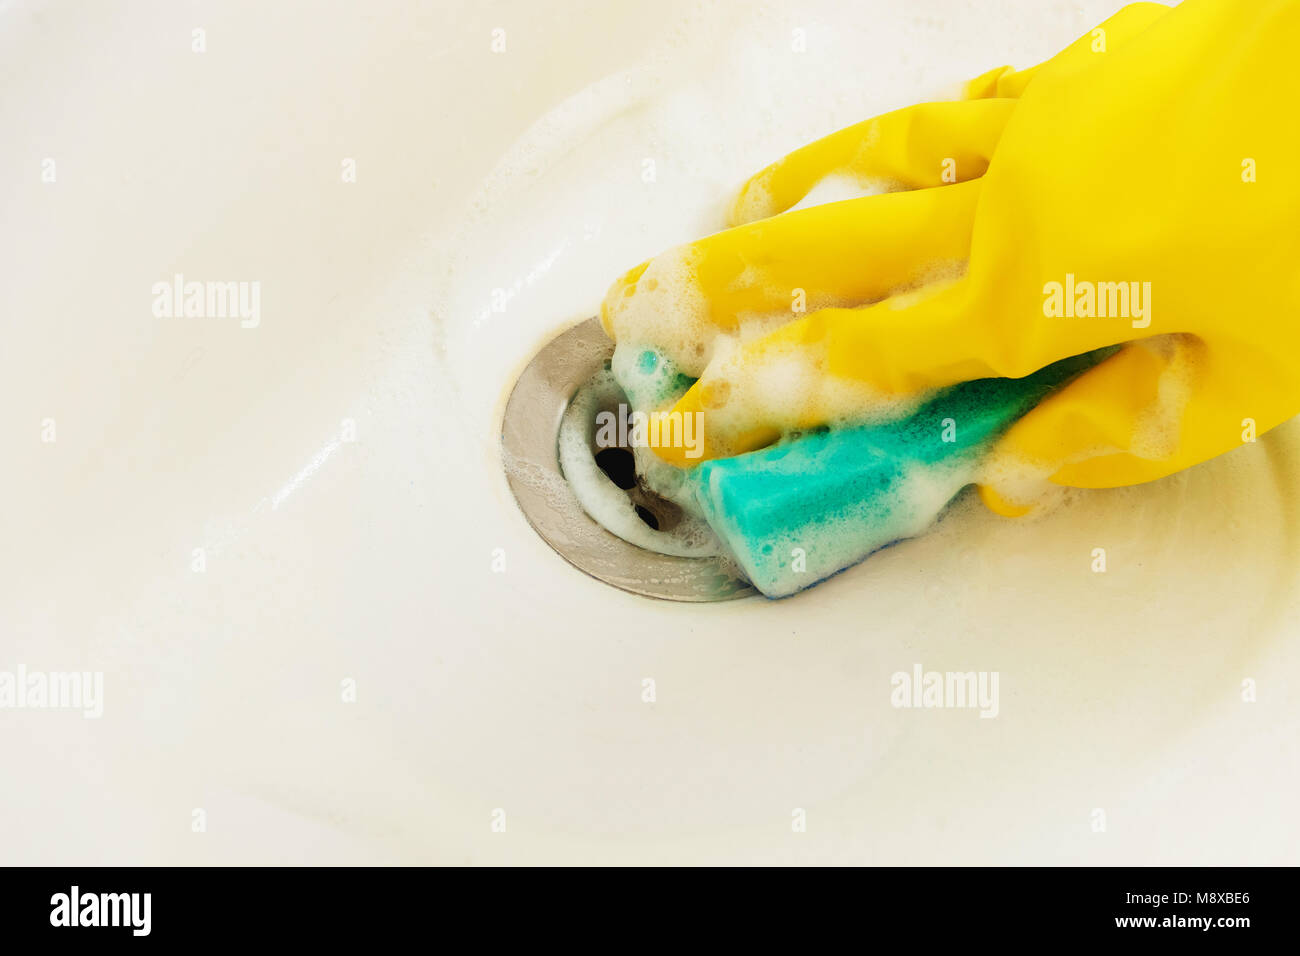 Évier de salle de bains de nettoyage avec un détergent en jaune avec des gants en caoutchouc éponge Bleu - le ménage, le nettoyage de printemps Concept Banque D'Images